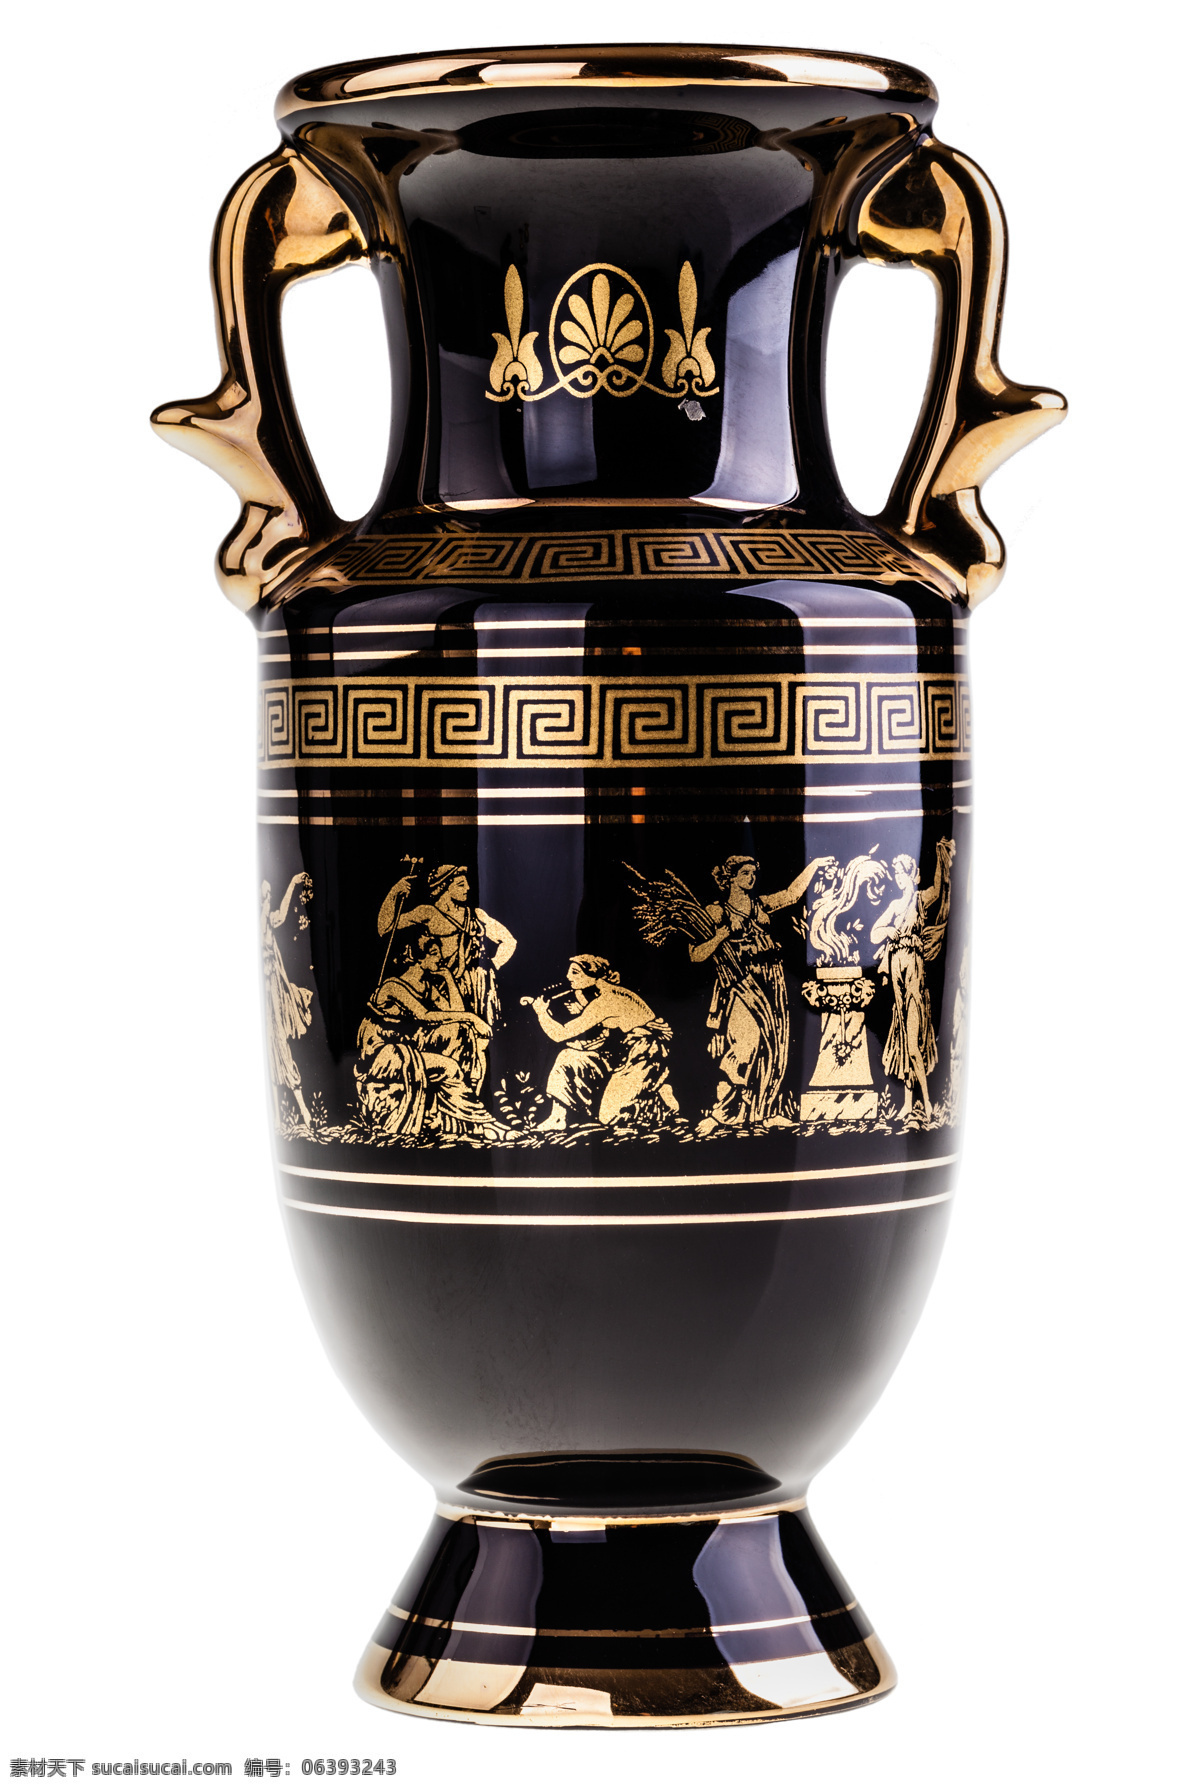 陶瓷瓶 唯美 炫酷 陶瓷 瓶子 花瓶 瓷器 生活 装饰 精美瓷瓶 精美陶瓷 釉色陶瓷 文化艺术 传统文化